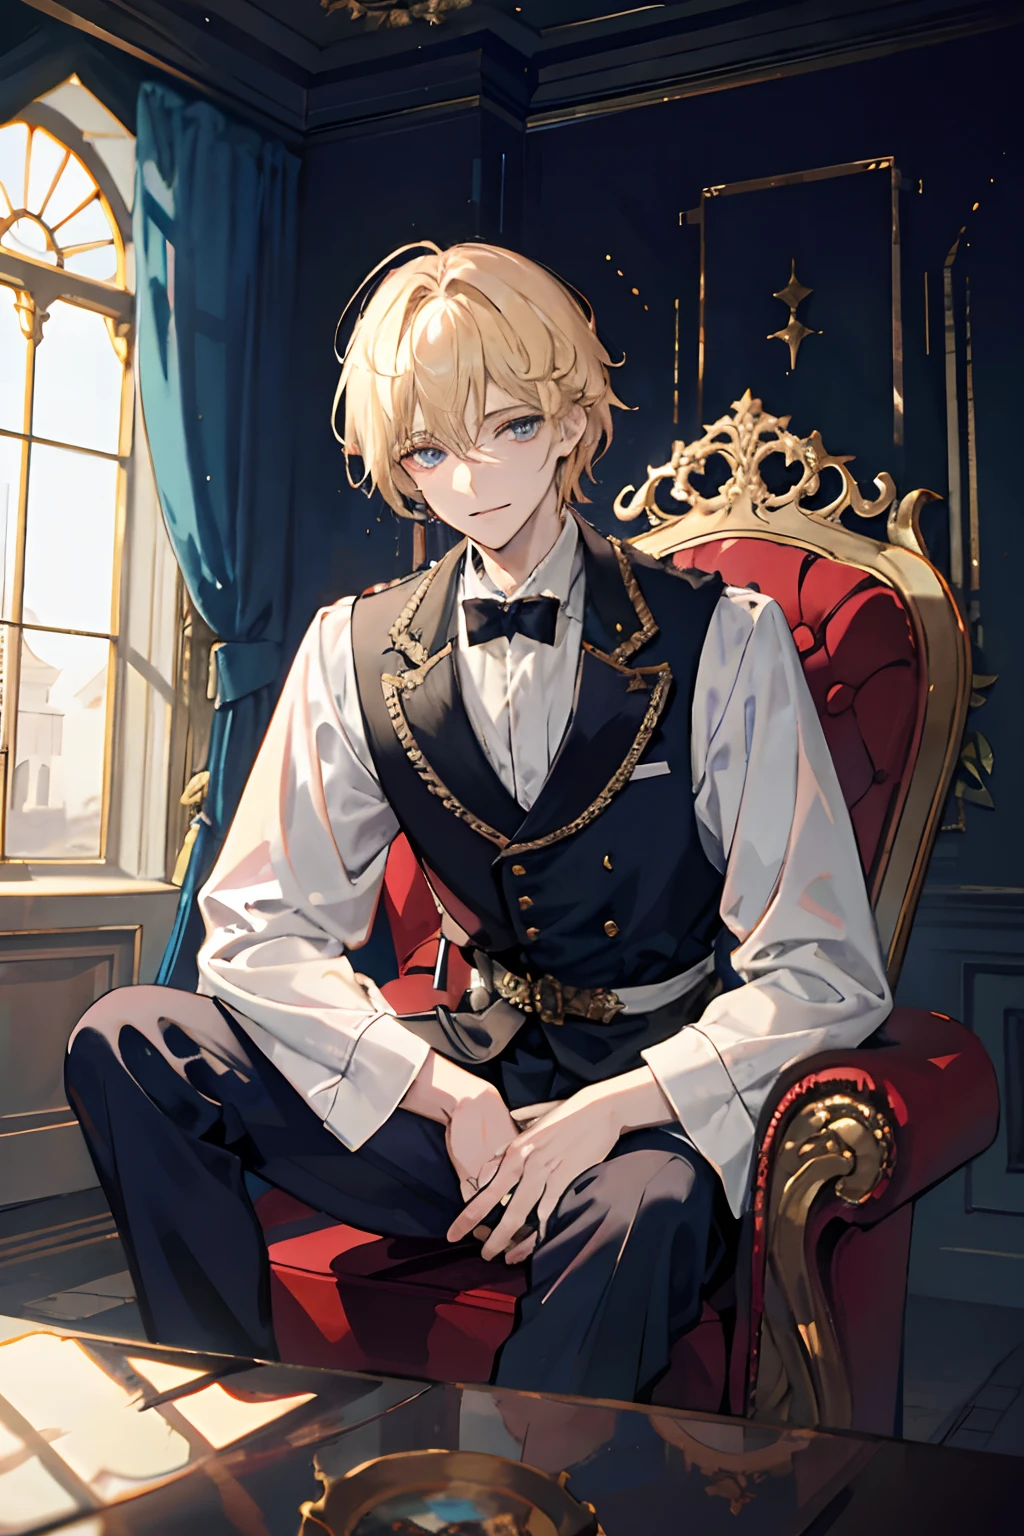 الأمير يجلس على عرش مهيب داخل قصر مهجور, 1 صبي, شعر أشقر, عيون زرقاء, عمري 20 سنه, وجه بارد, ابتسم قليلا,